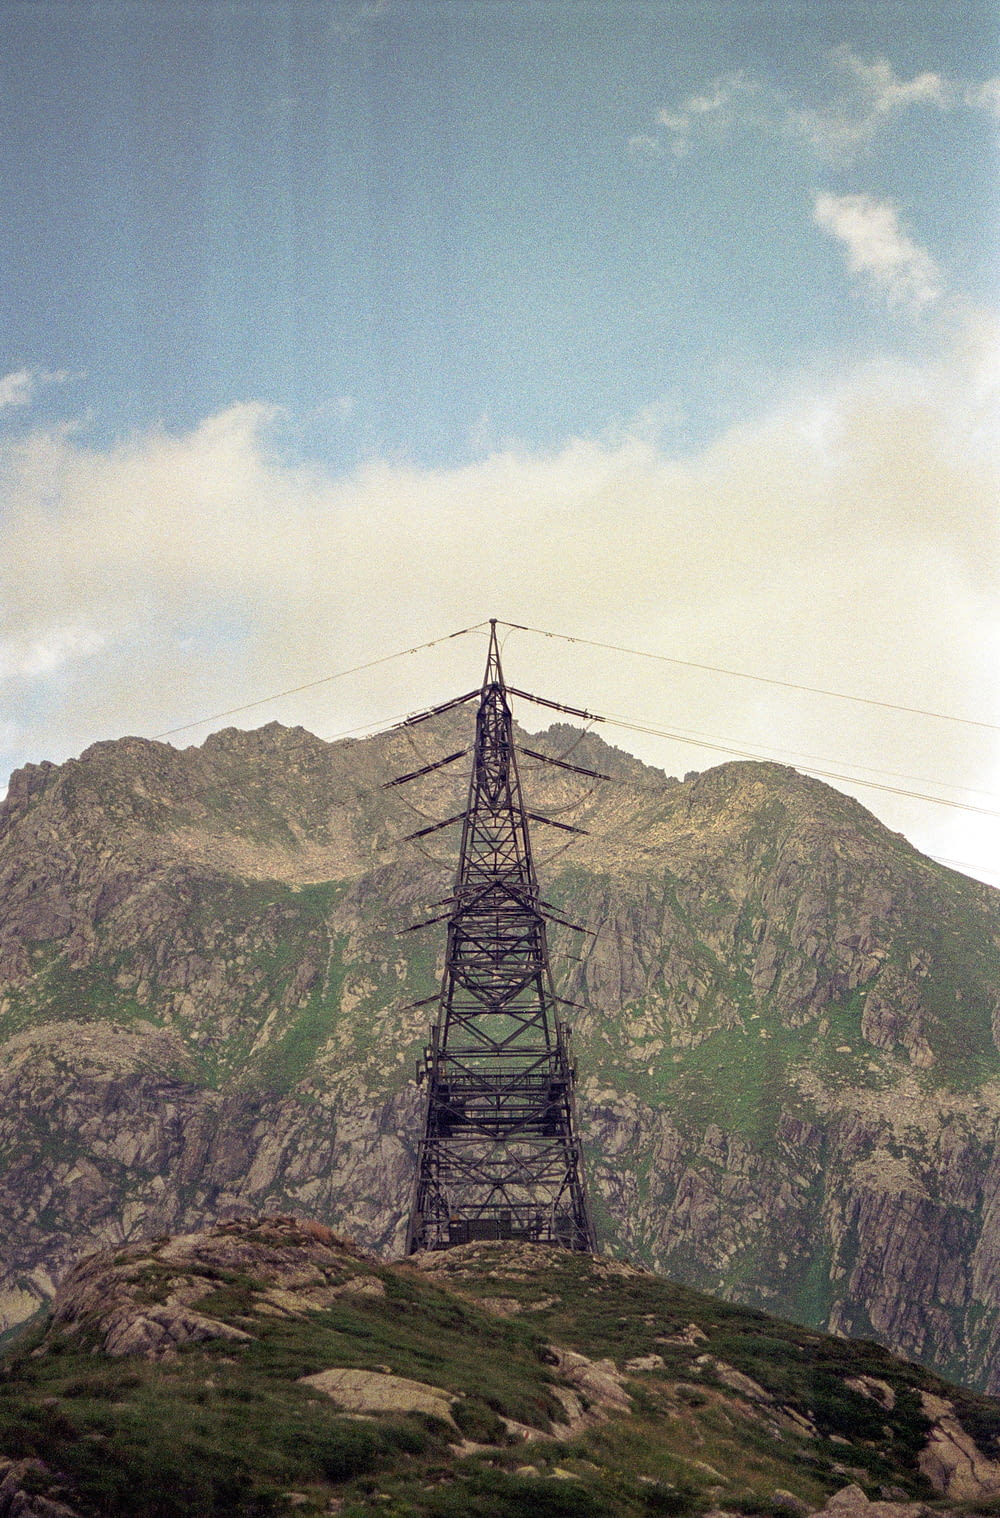 무성한 녹색 언덕 꼭대기에 앉아있는 높은 탑